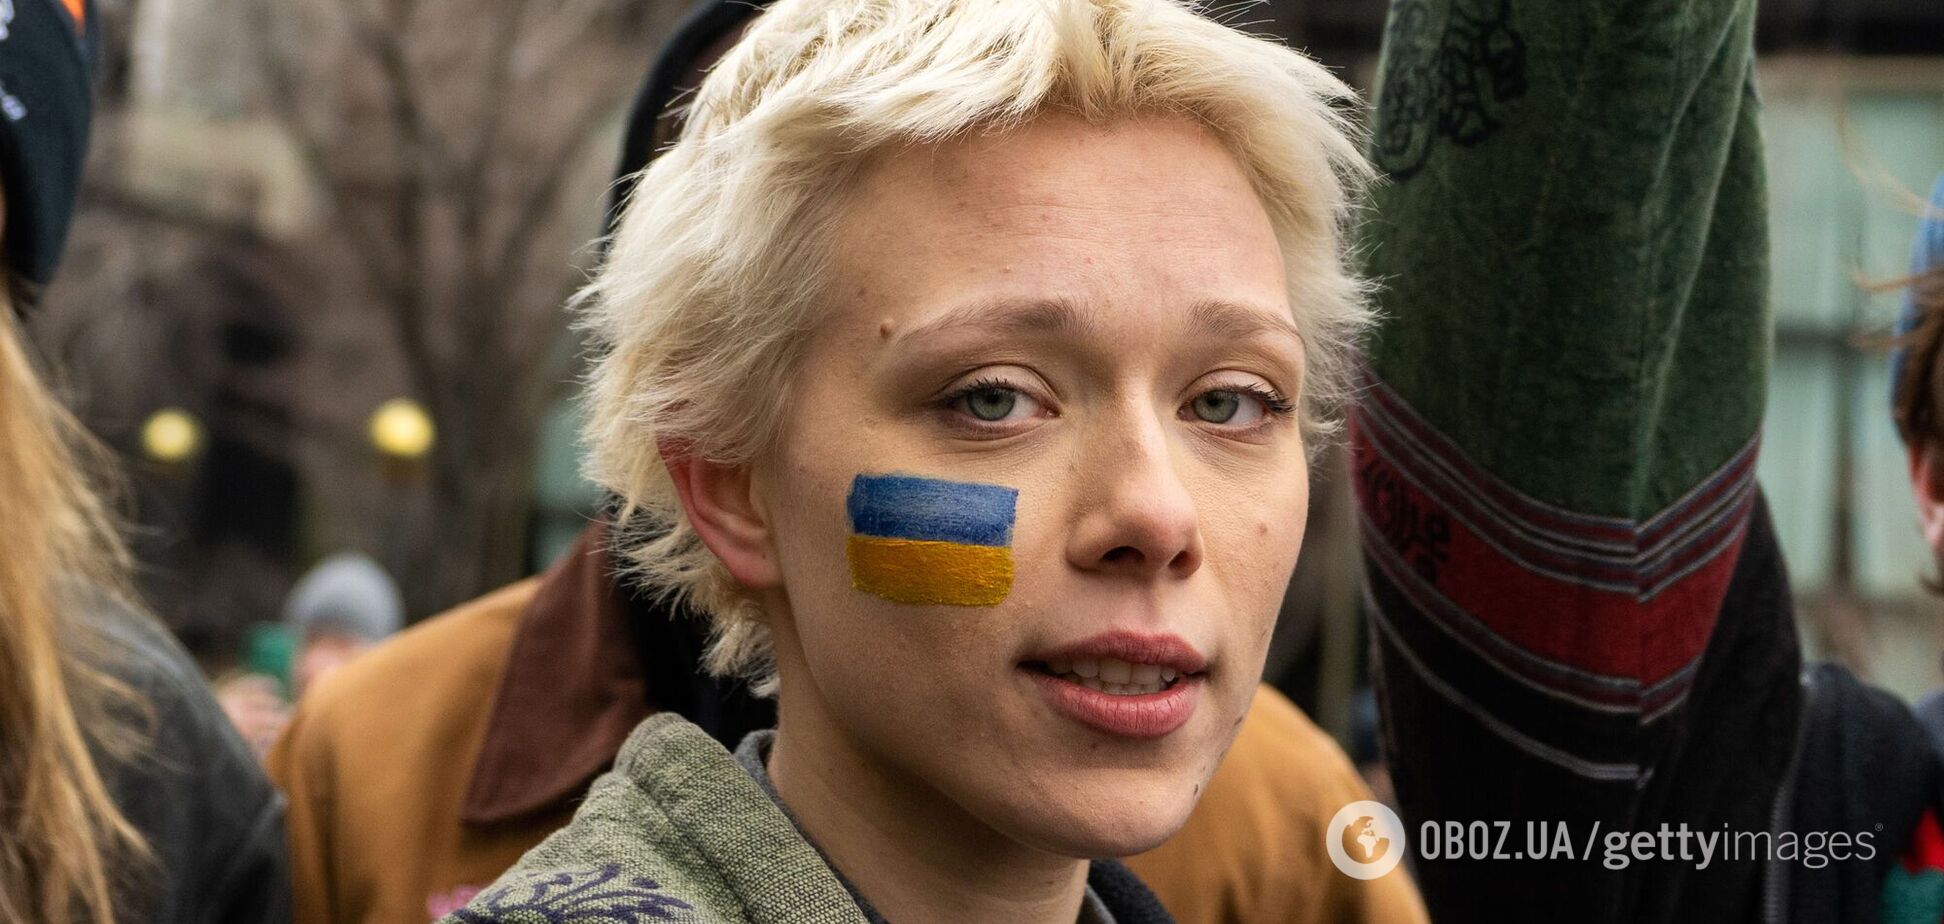 Голлівудська акторка з України Іванна Сахно відмовилася грати росіянку і розірвала контракт із Netflix. Подробиці
